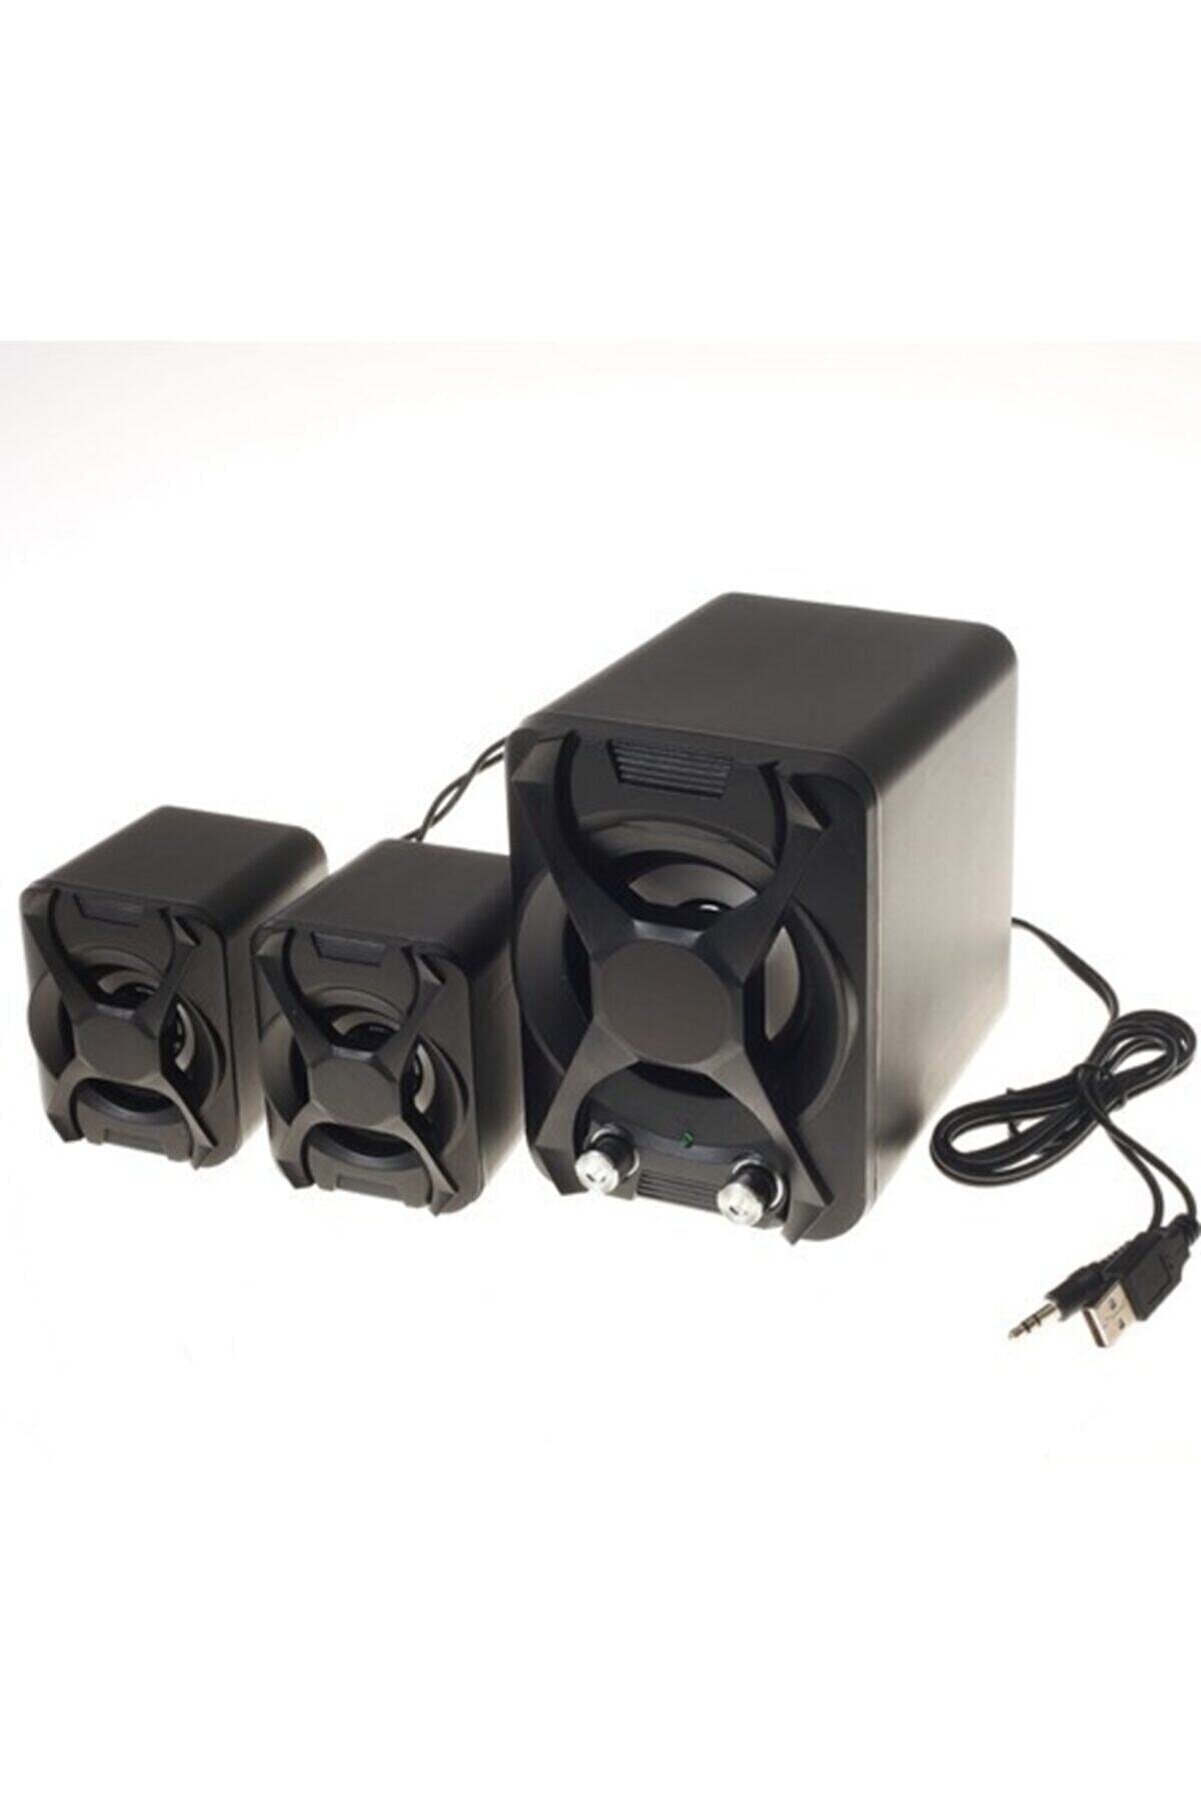 Platoon Pl-4243 Mini 2+1 Usb Multimedia Speaker